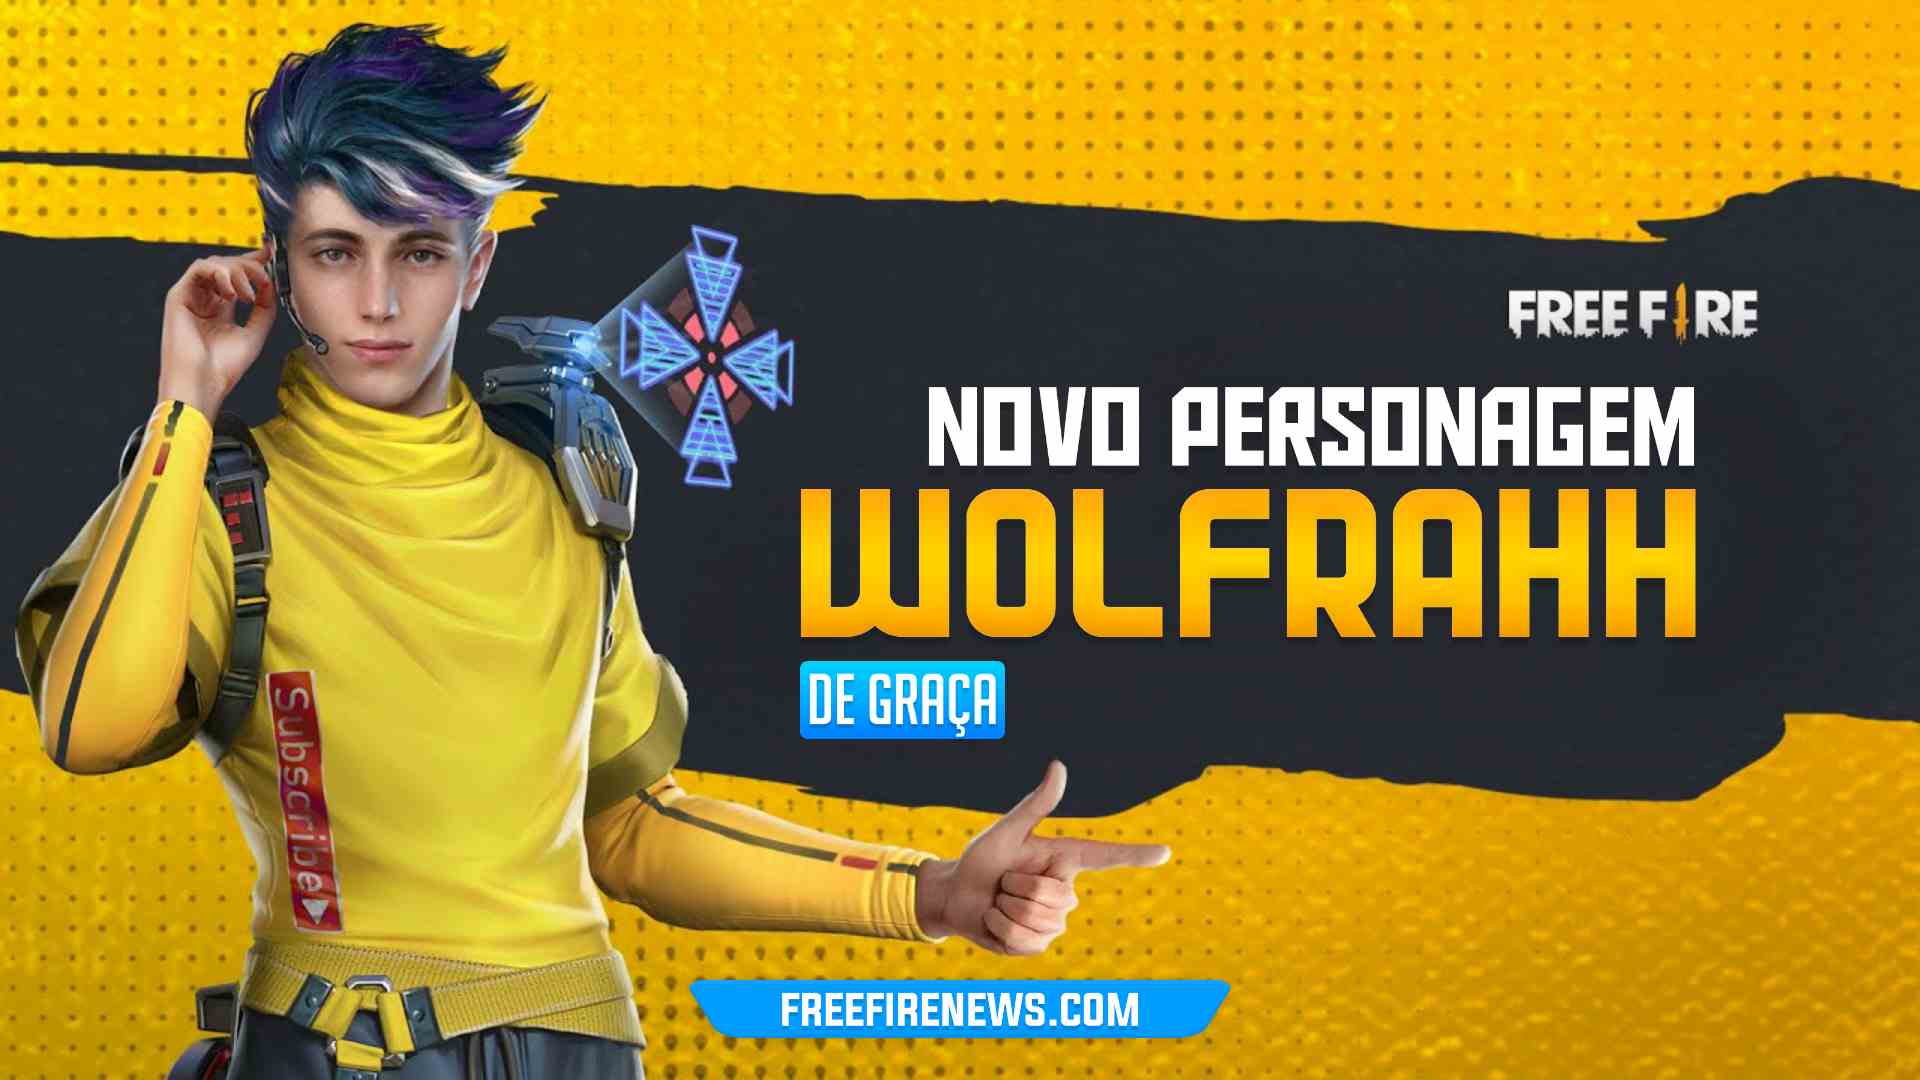 Wolfrahh: Concorra a ganhar o Novo Personagem do Free Fire